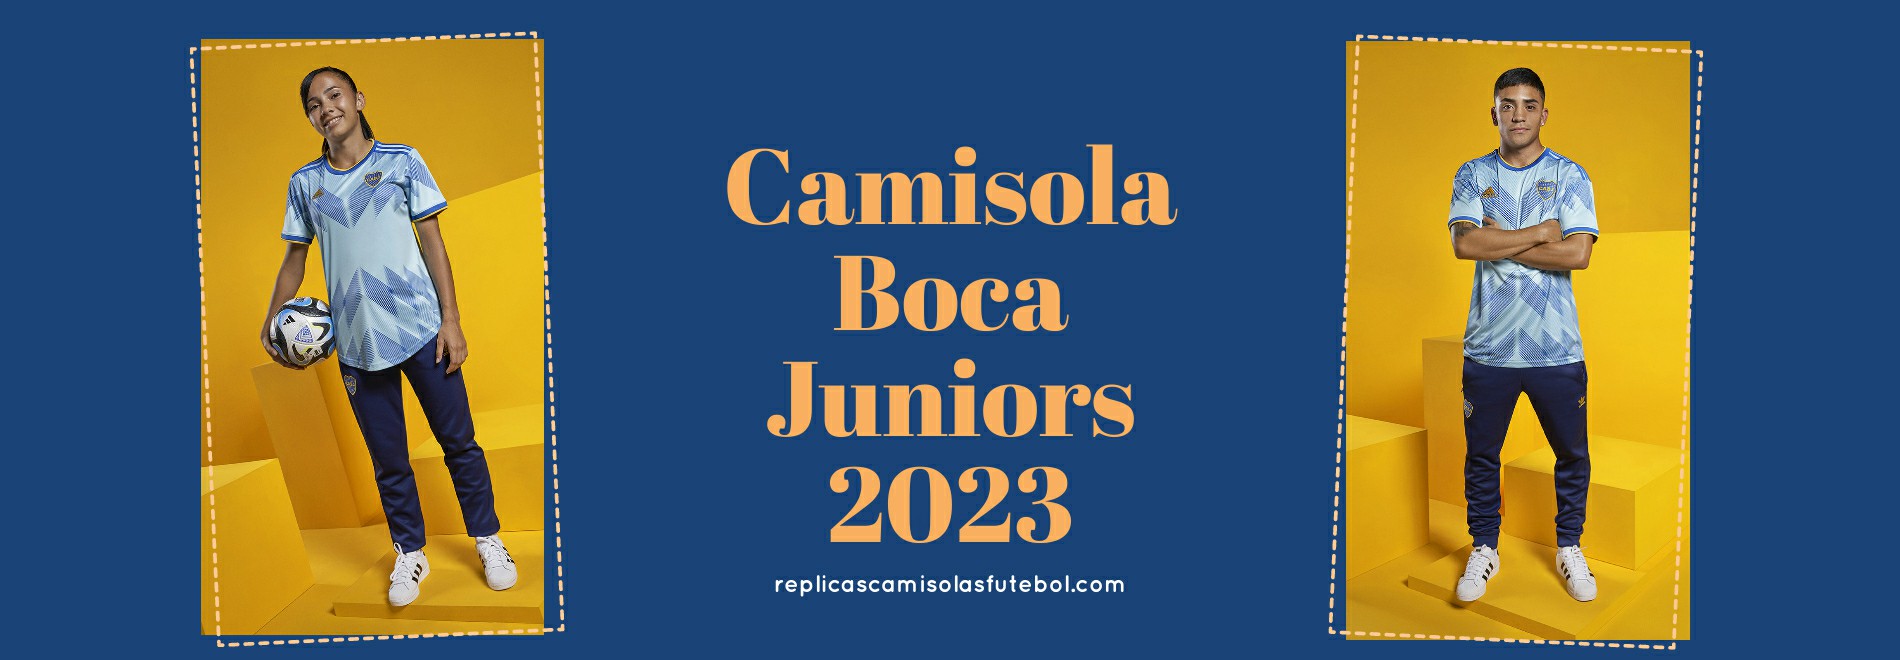 Camisola Boca Juniors 2023-2024